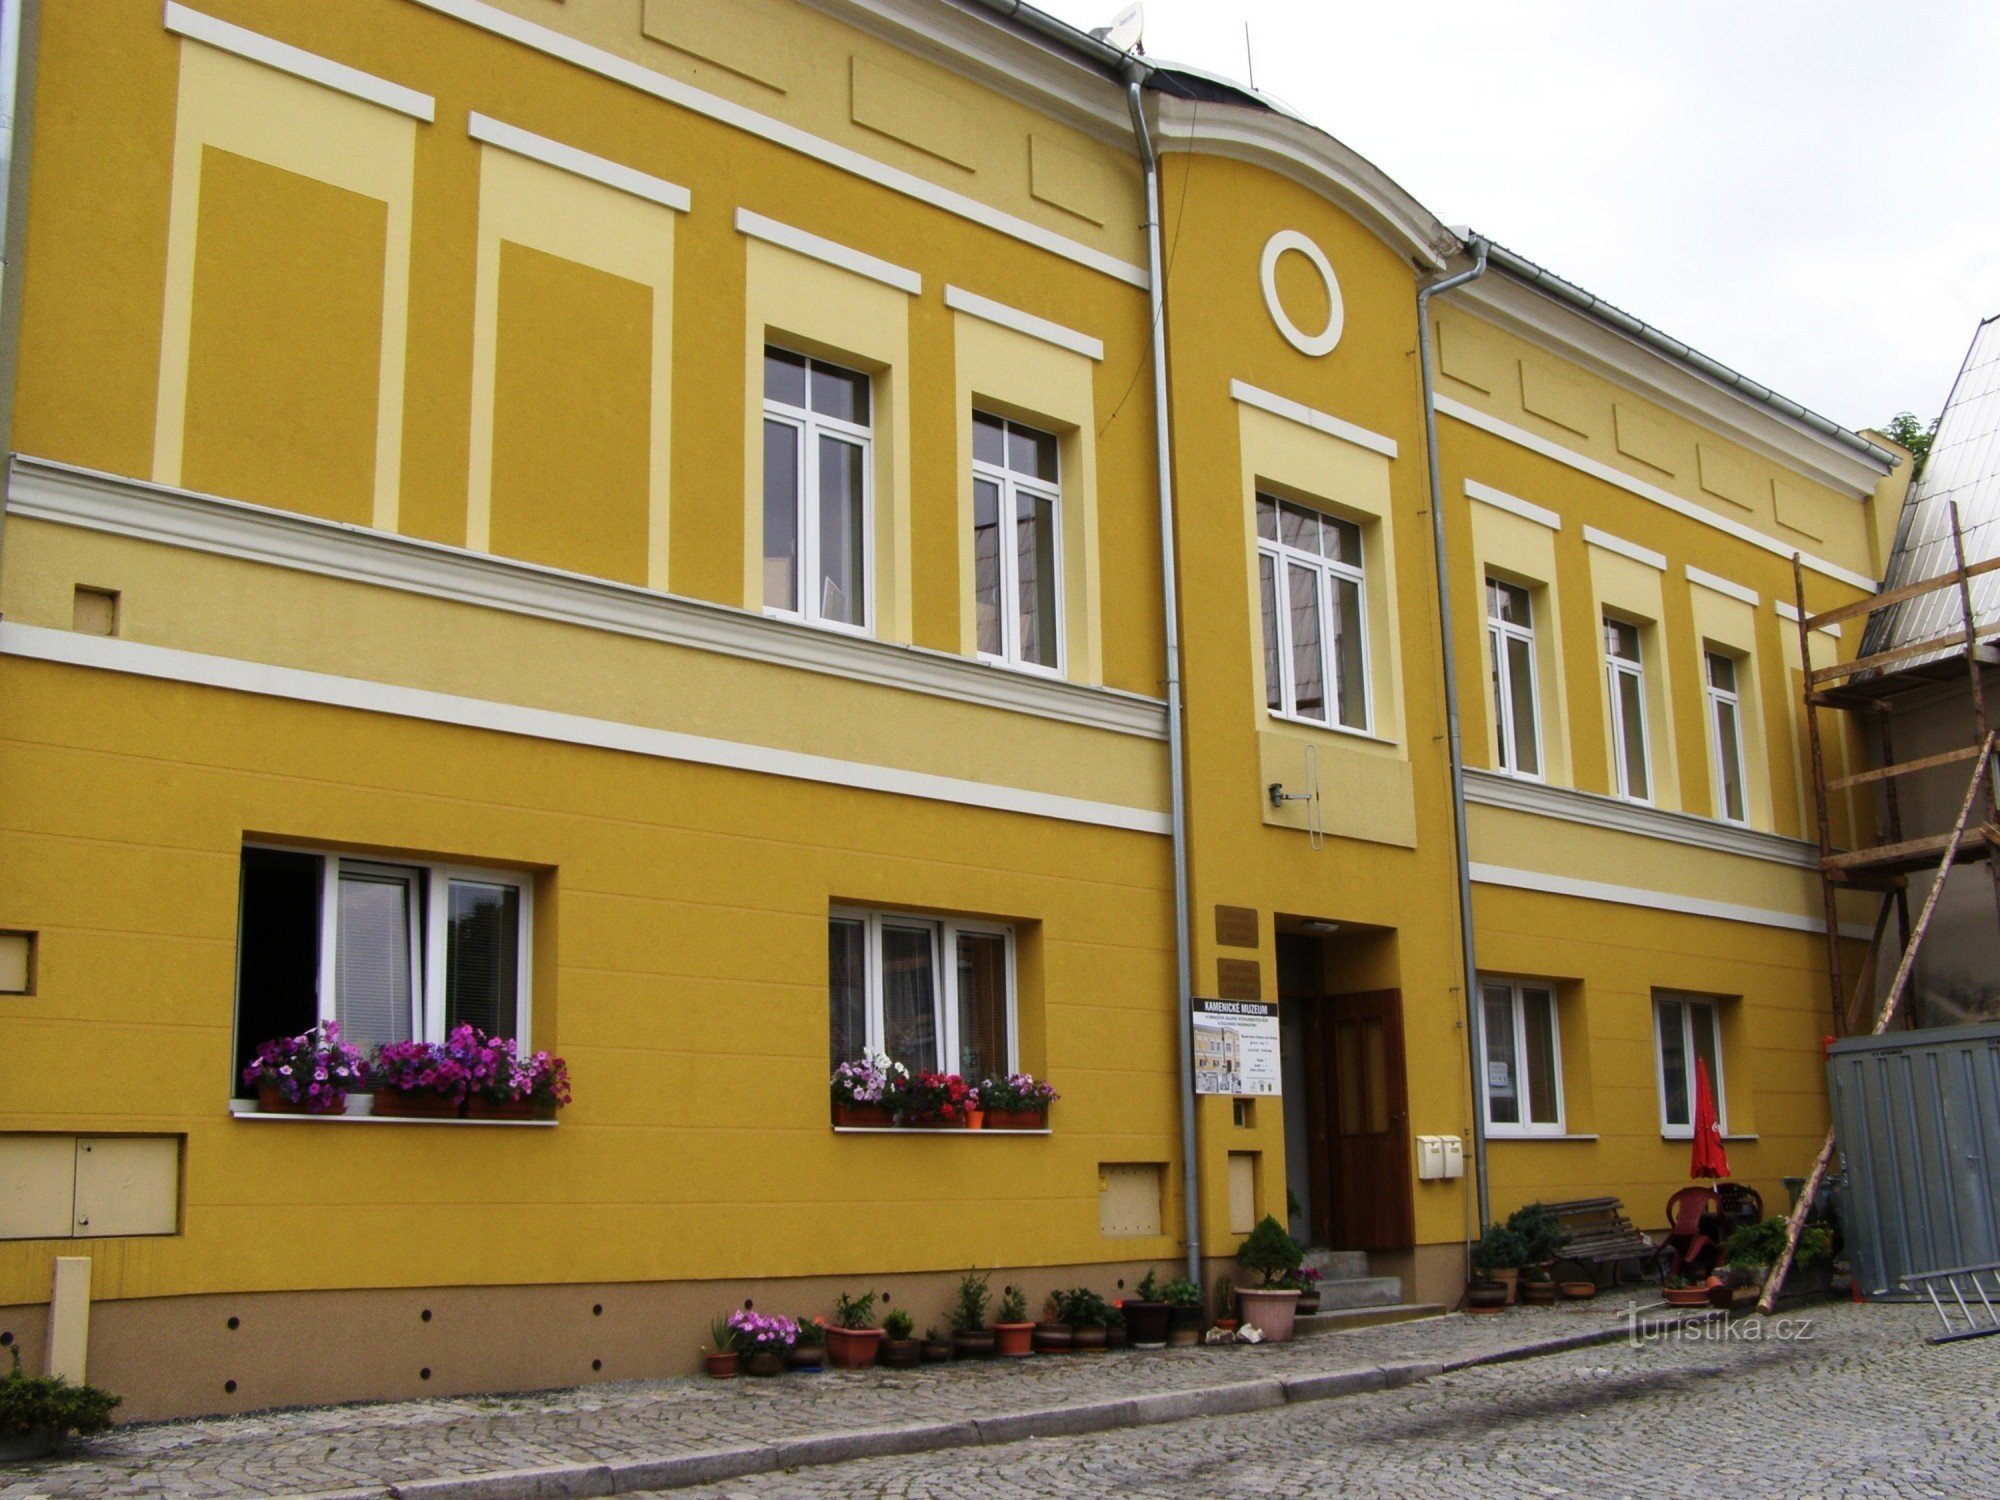 Žulová - Kamenické museum, turistinformationscenter, bibliotek